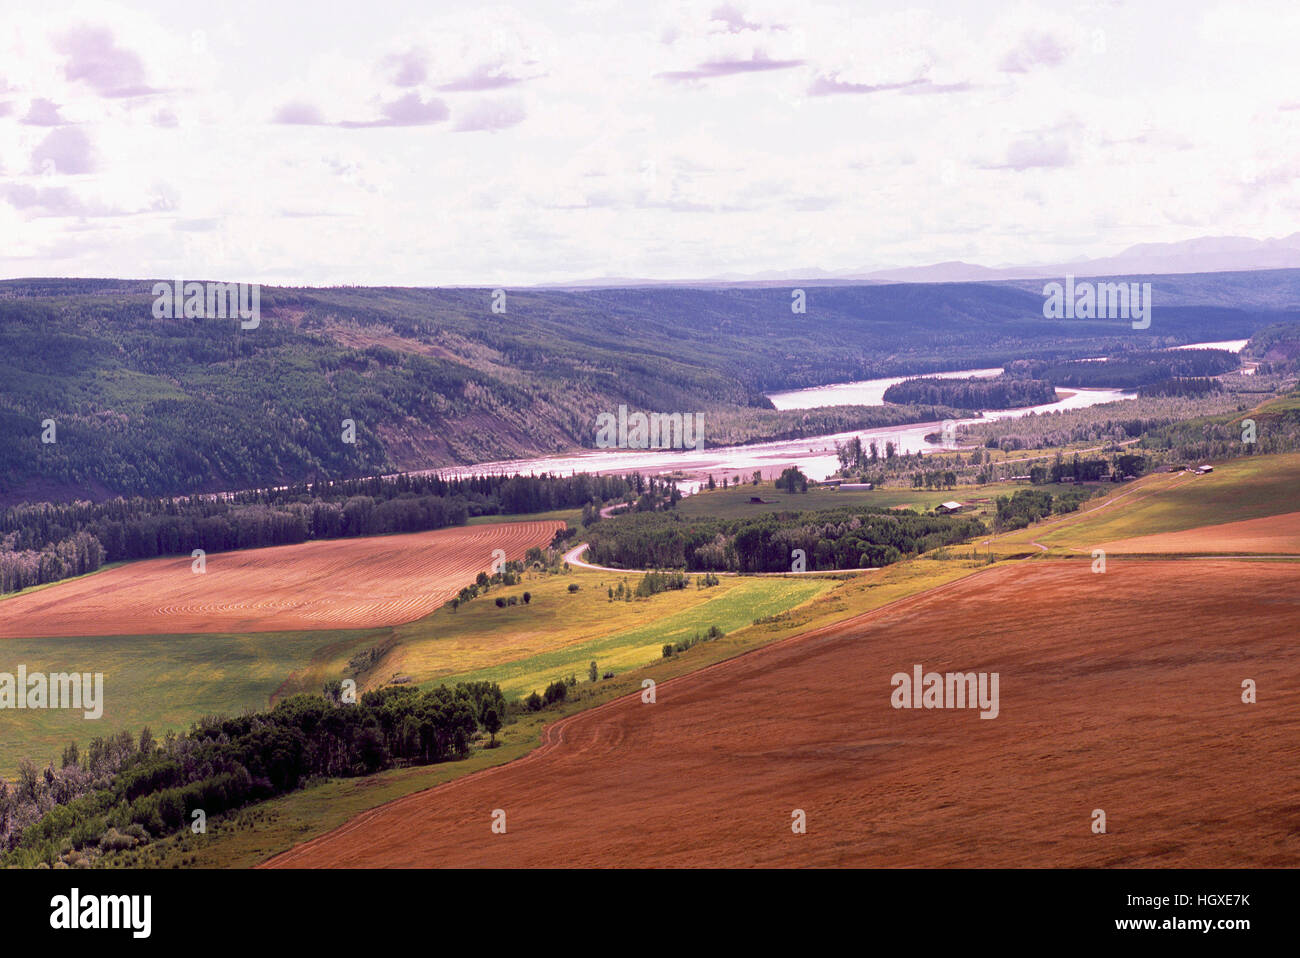 Vallée de la rivière de la paix et des terres agricoles / champs de céréales au moment de la récolte, près de Fort St John, le nord de la Colombie-Britannique, Canada Banque D'Images